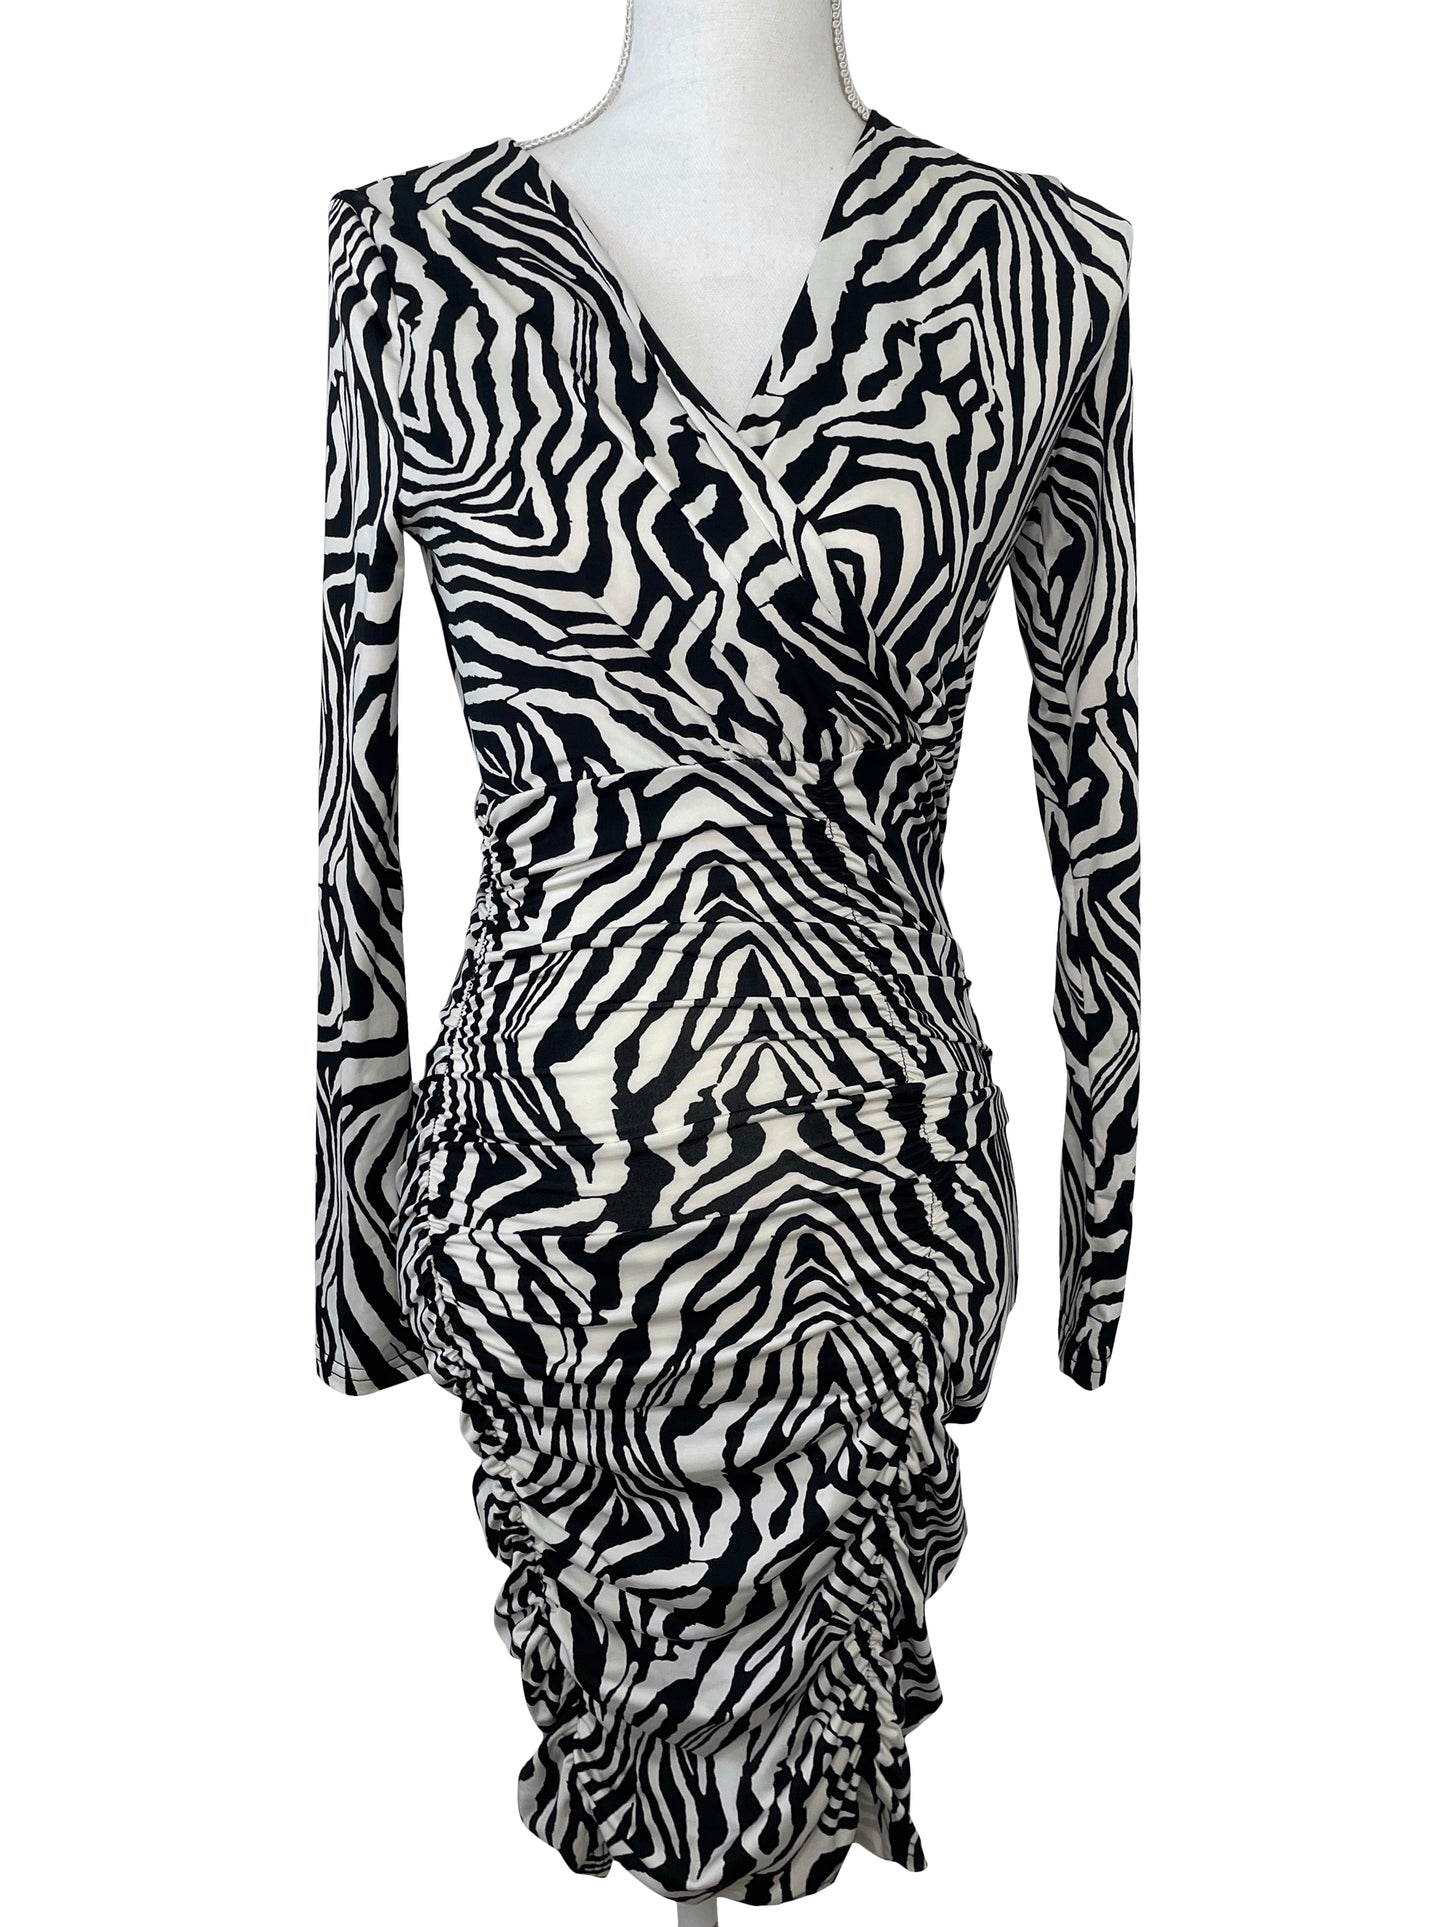 Zebra print long sleeve dress